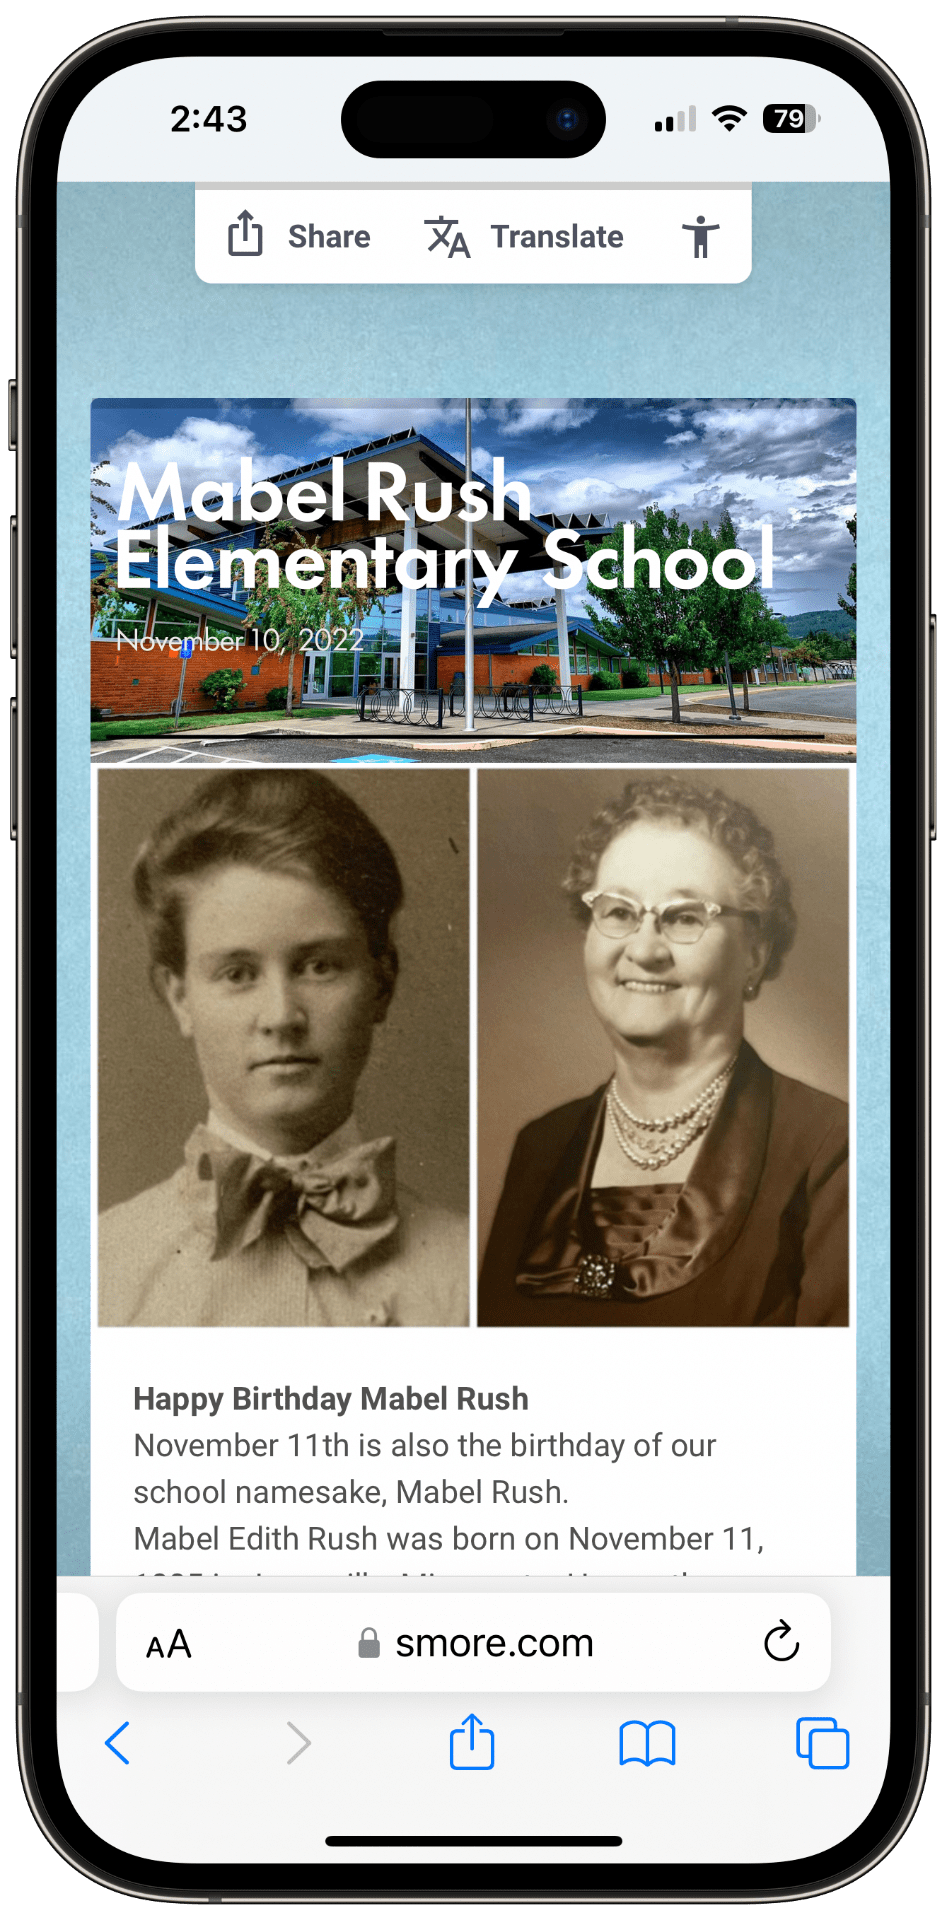 november-10-2022-newsletter-mabel-rush-elementary-school